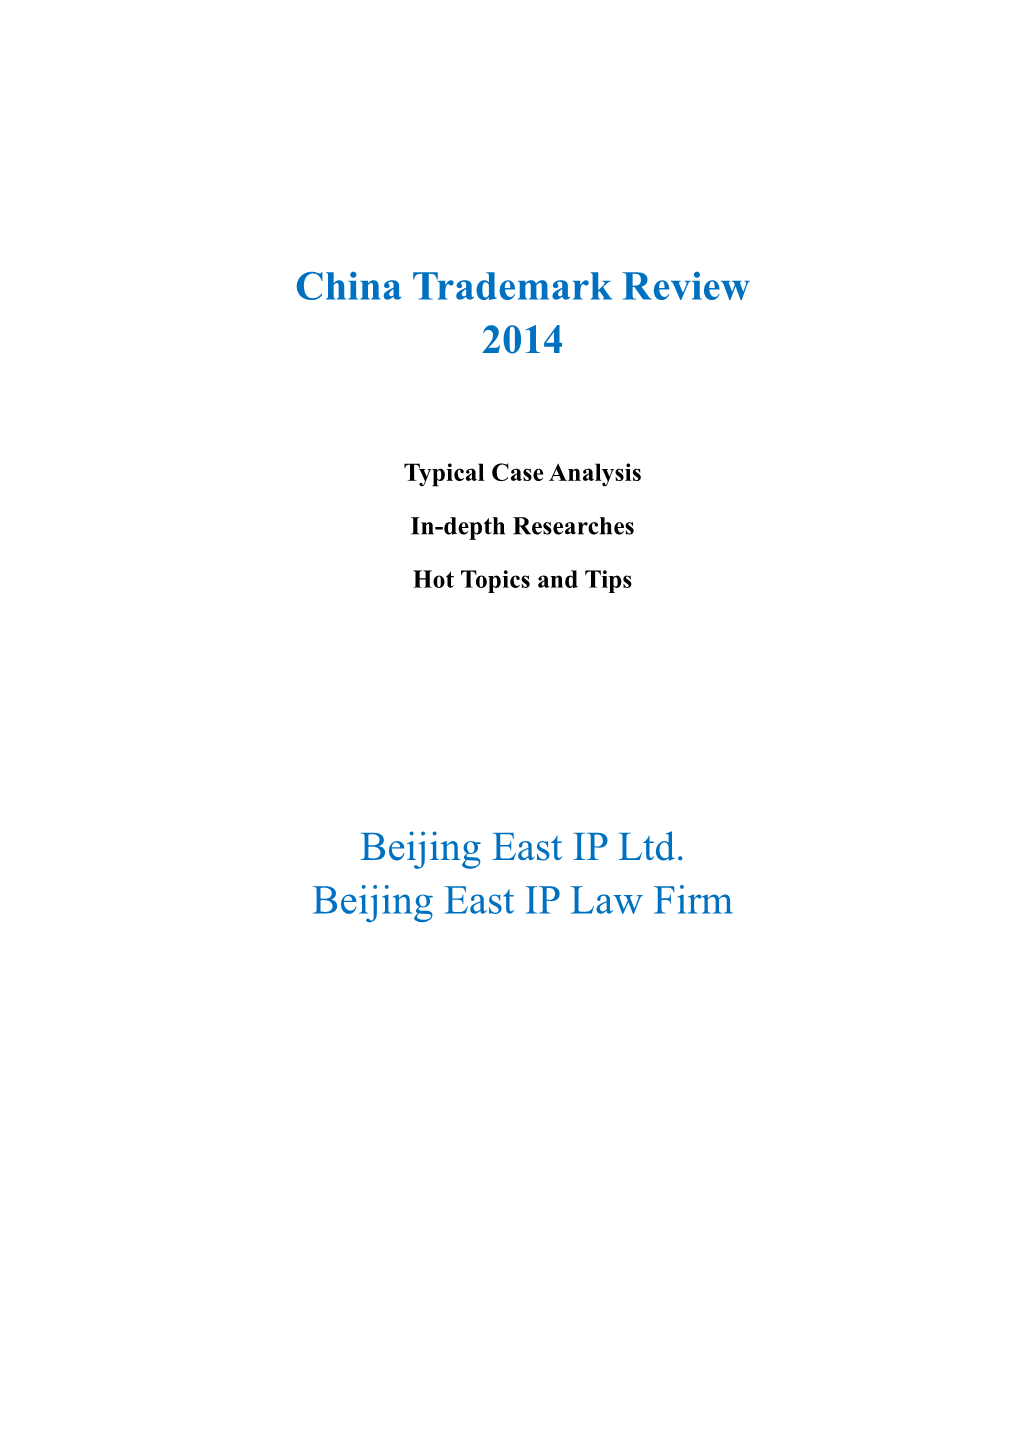 China Trademark Review 2014 Beijing East IP Ltd. Beijing East IP Law Firm